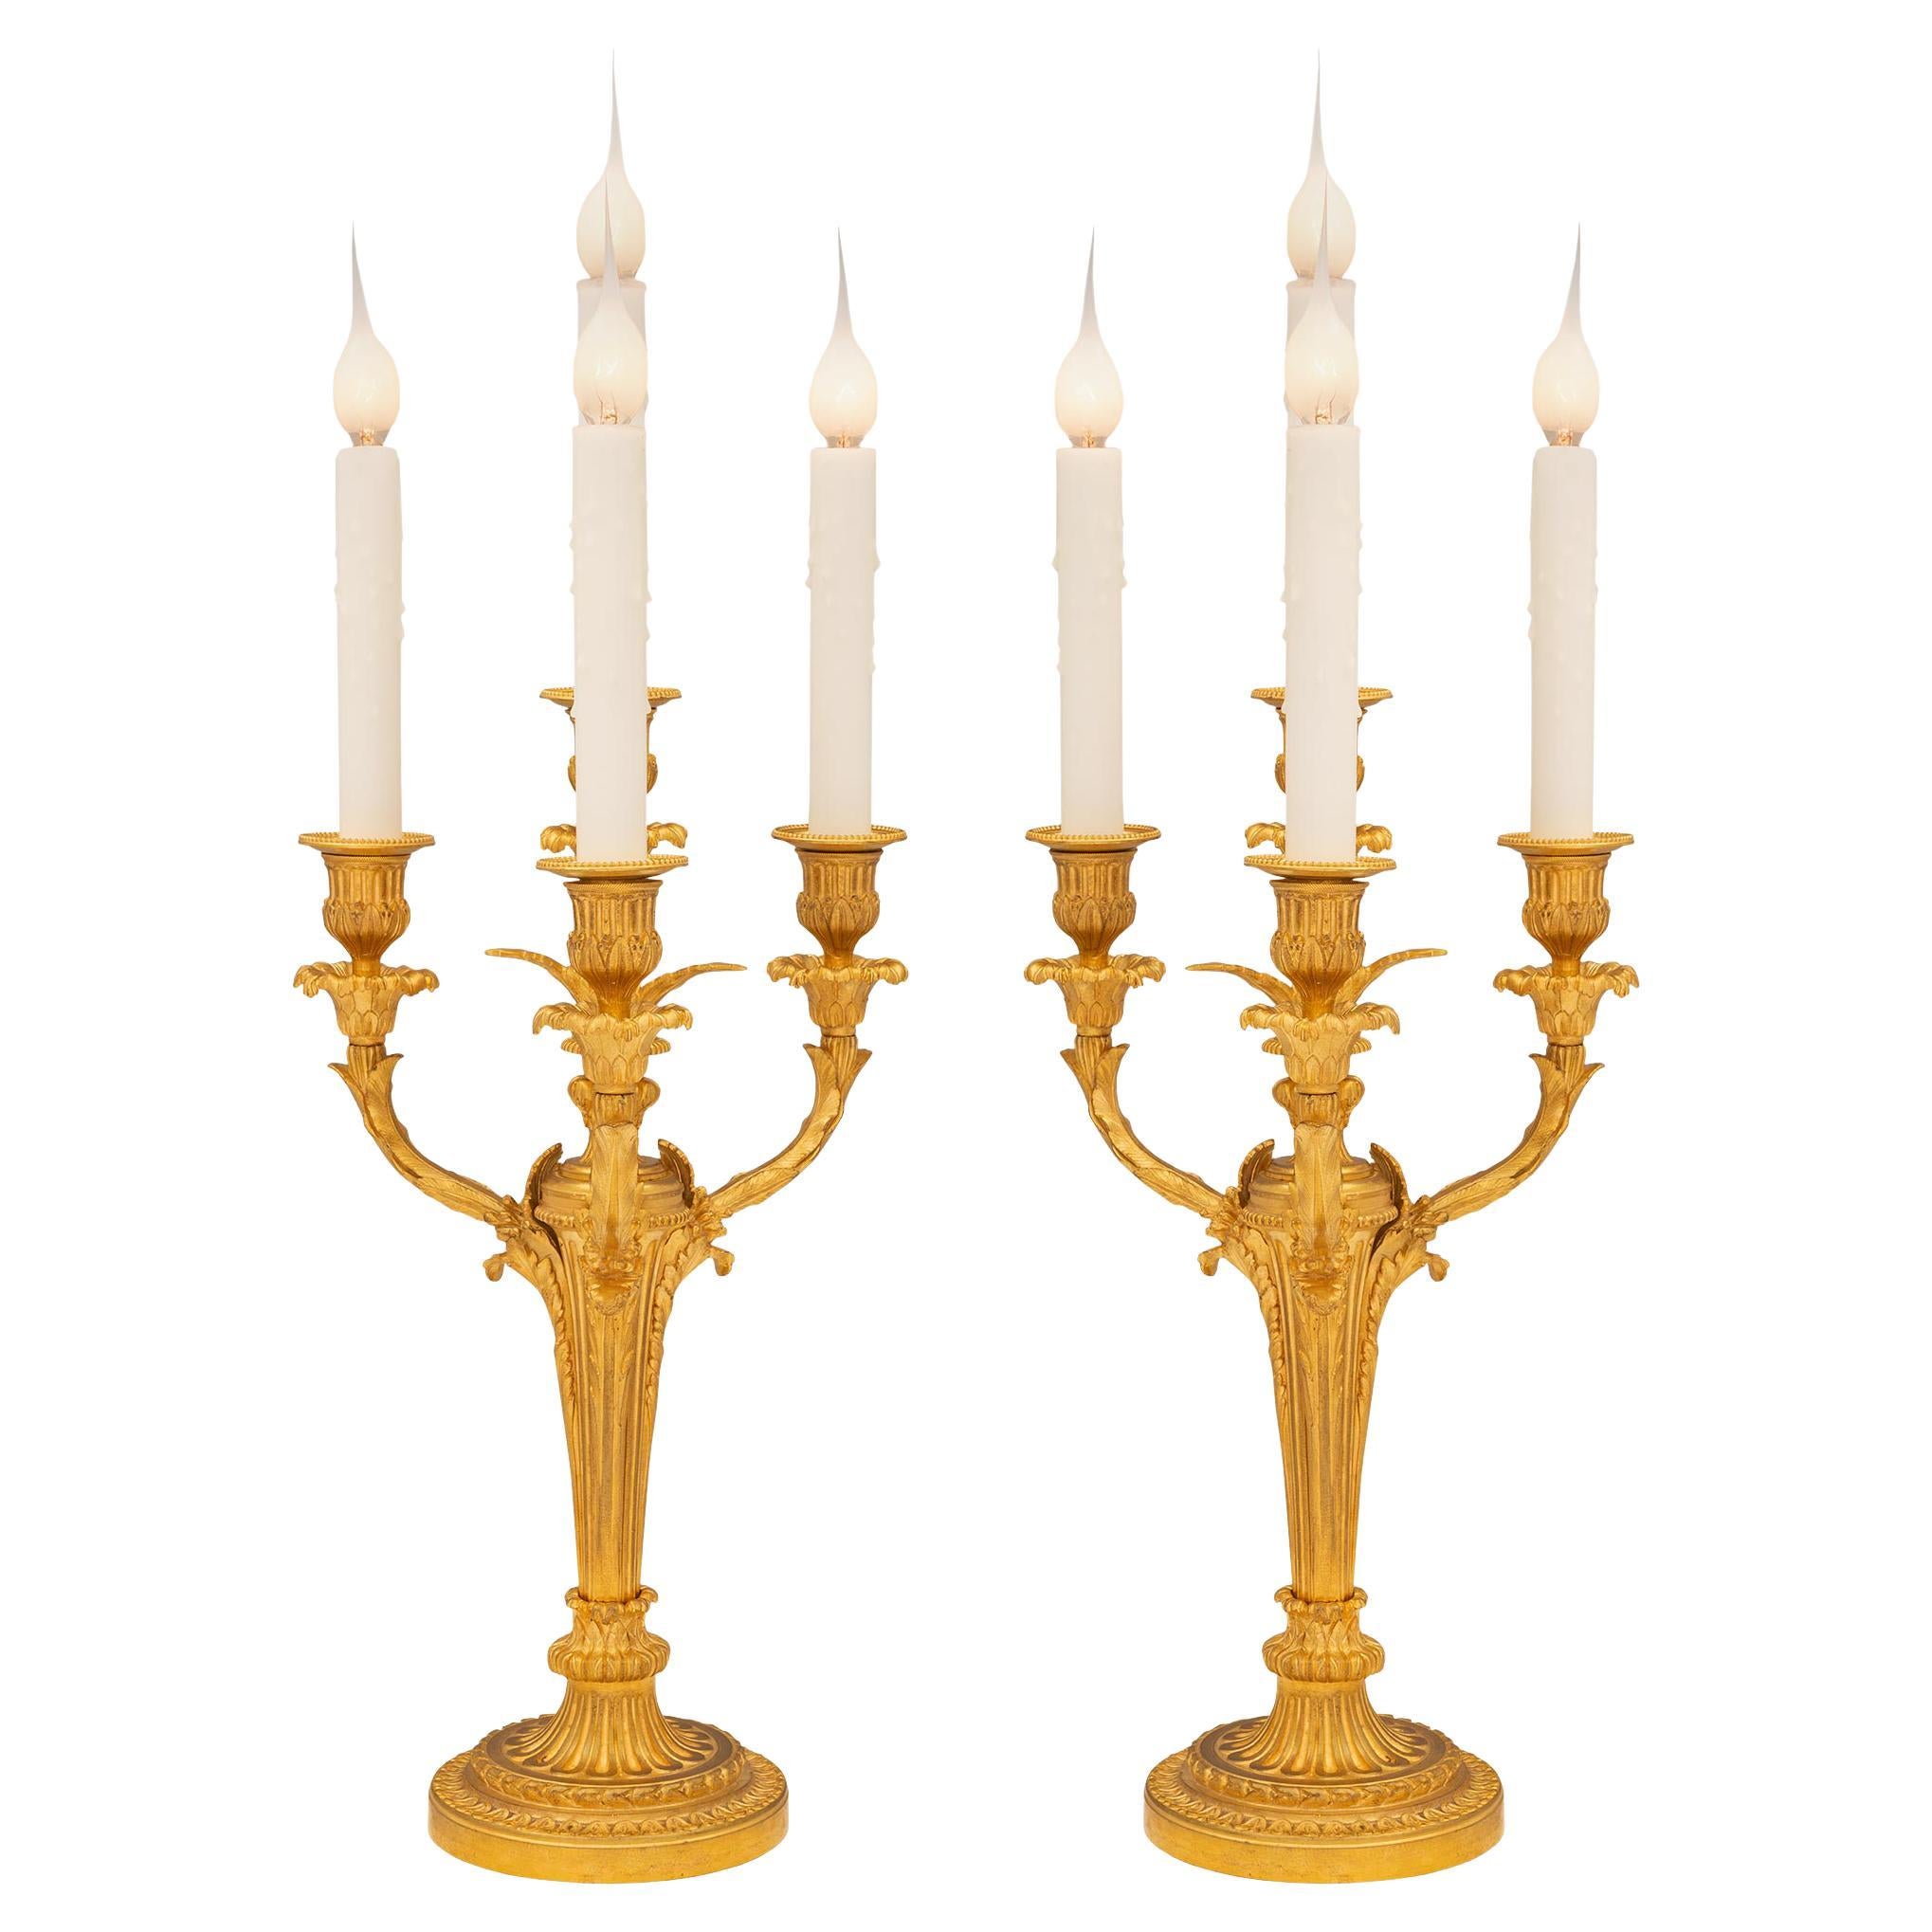 Paire de candélabres en bronze doré de style Louis XVI du XIXe siècle français